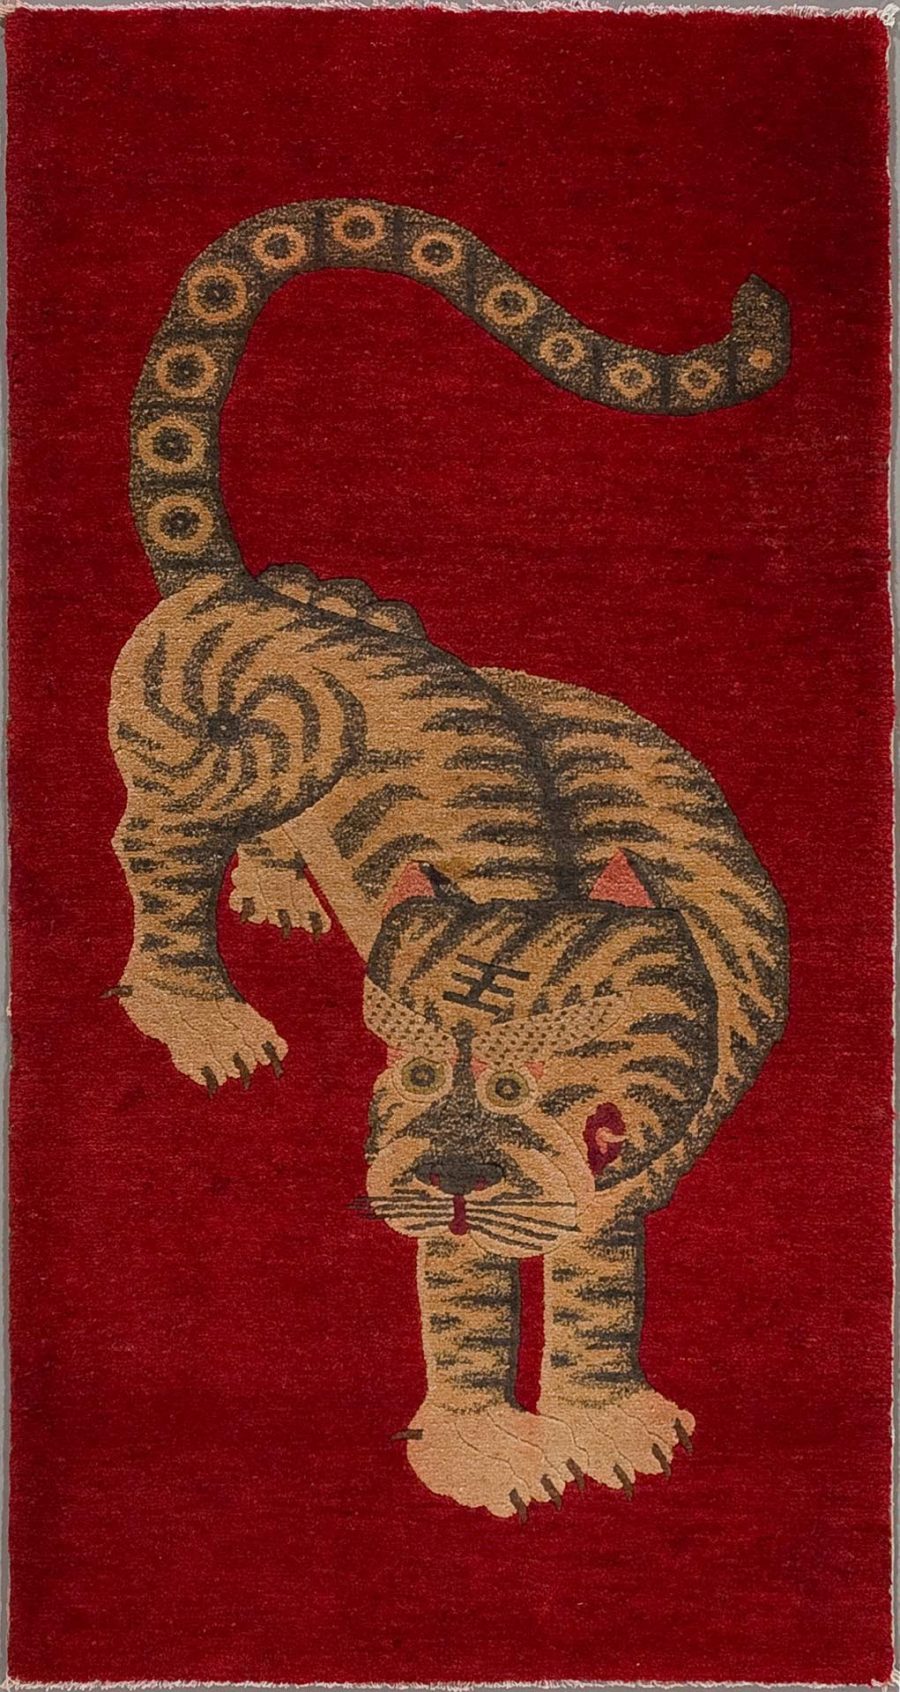 Antiker Teppich mit stilisierter Darstellung eines Tigers auf rotem Hintergrund, der nach unten schaut, mit sichtbaren Streifen und Ringen auf dem Schwanz.